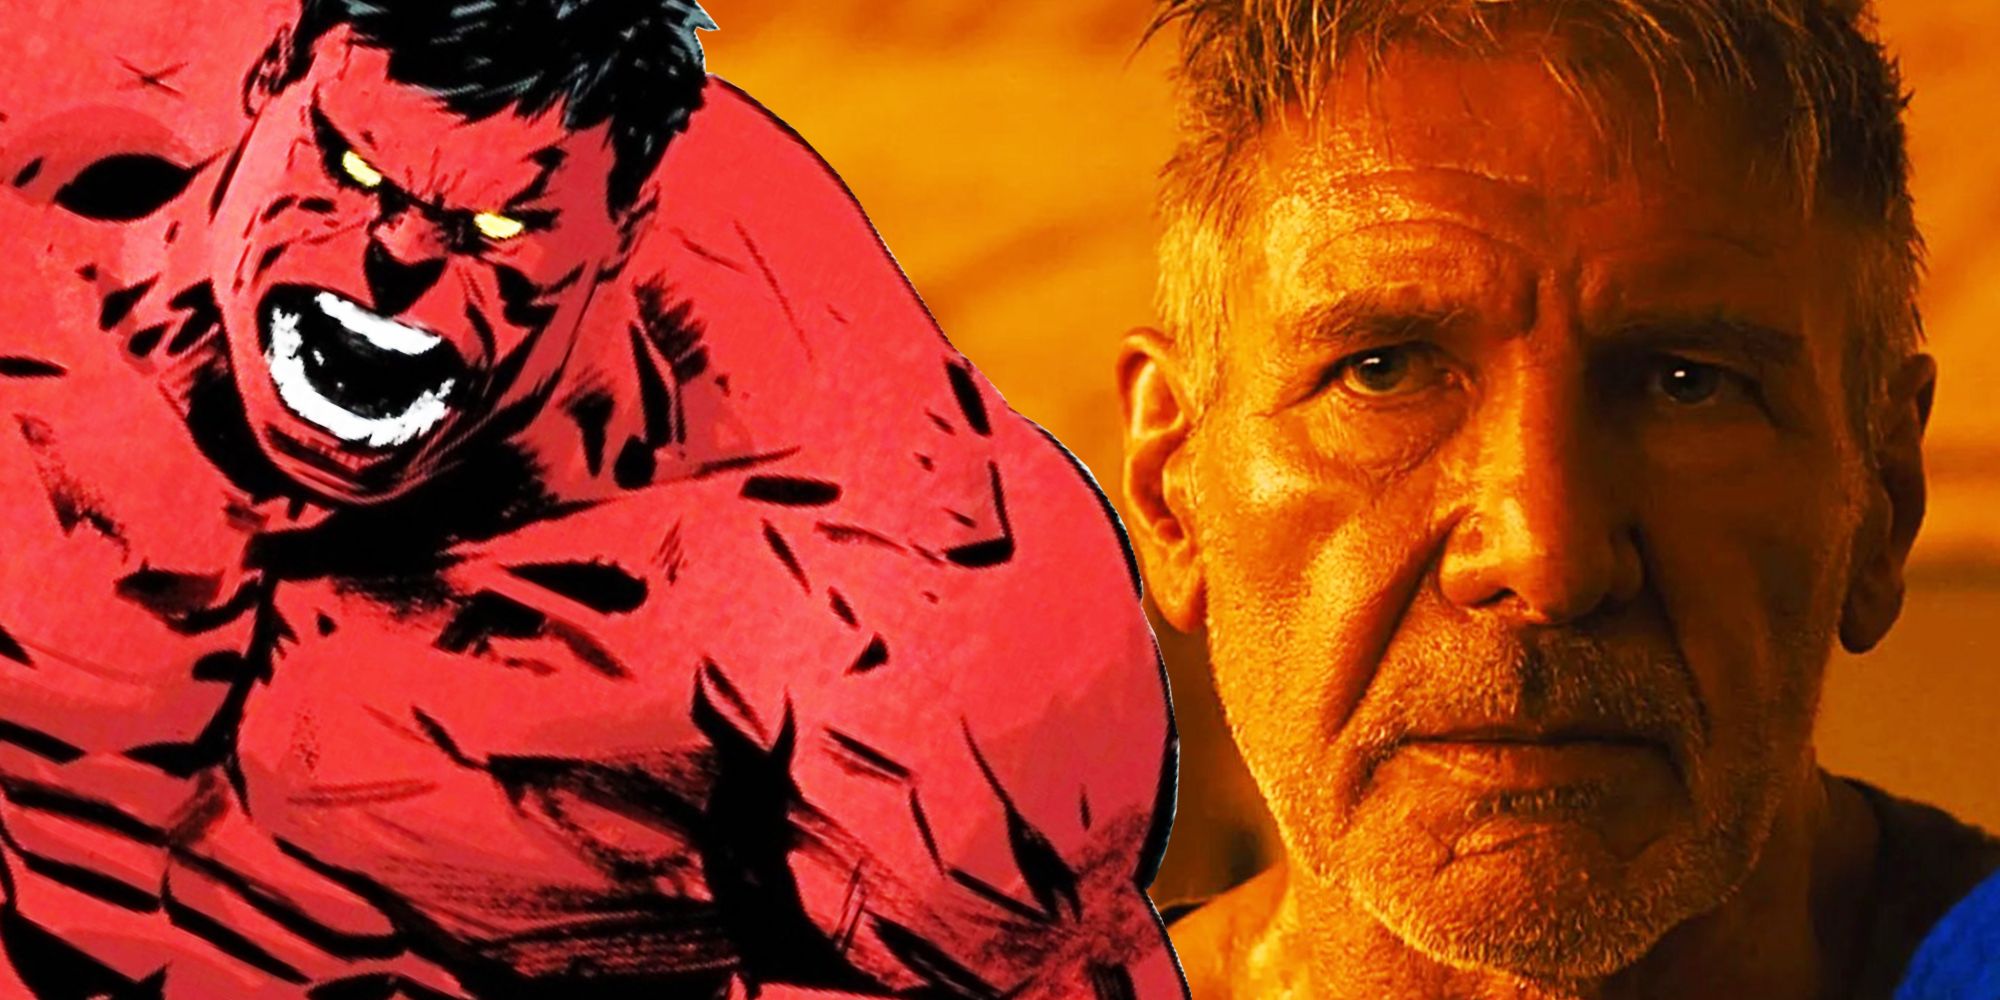 Imagen combinada de Harrison Ford como Deckard luciendo neutral en Blade Runner 2049 y un cómic Red Hulk luciendo enojado